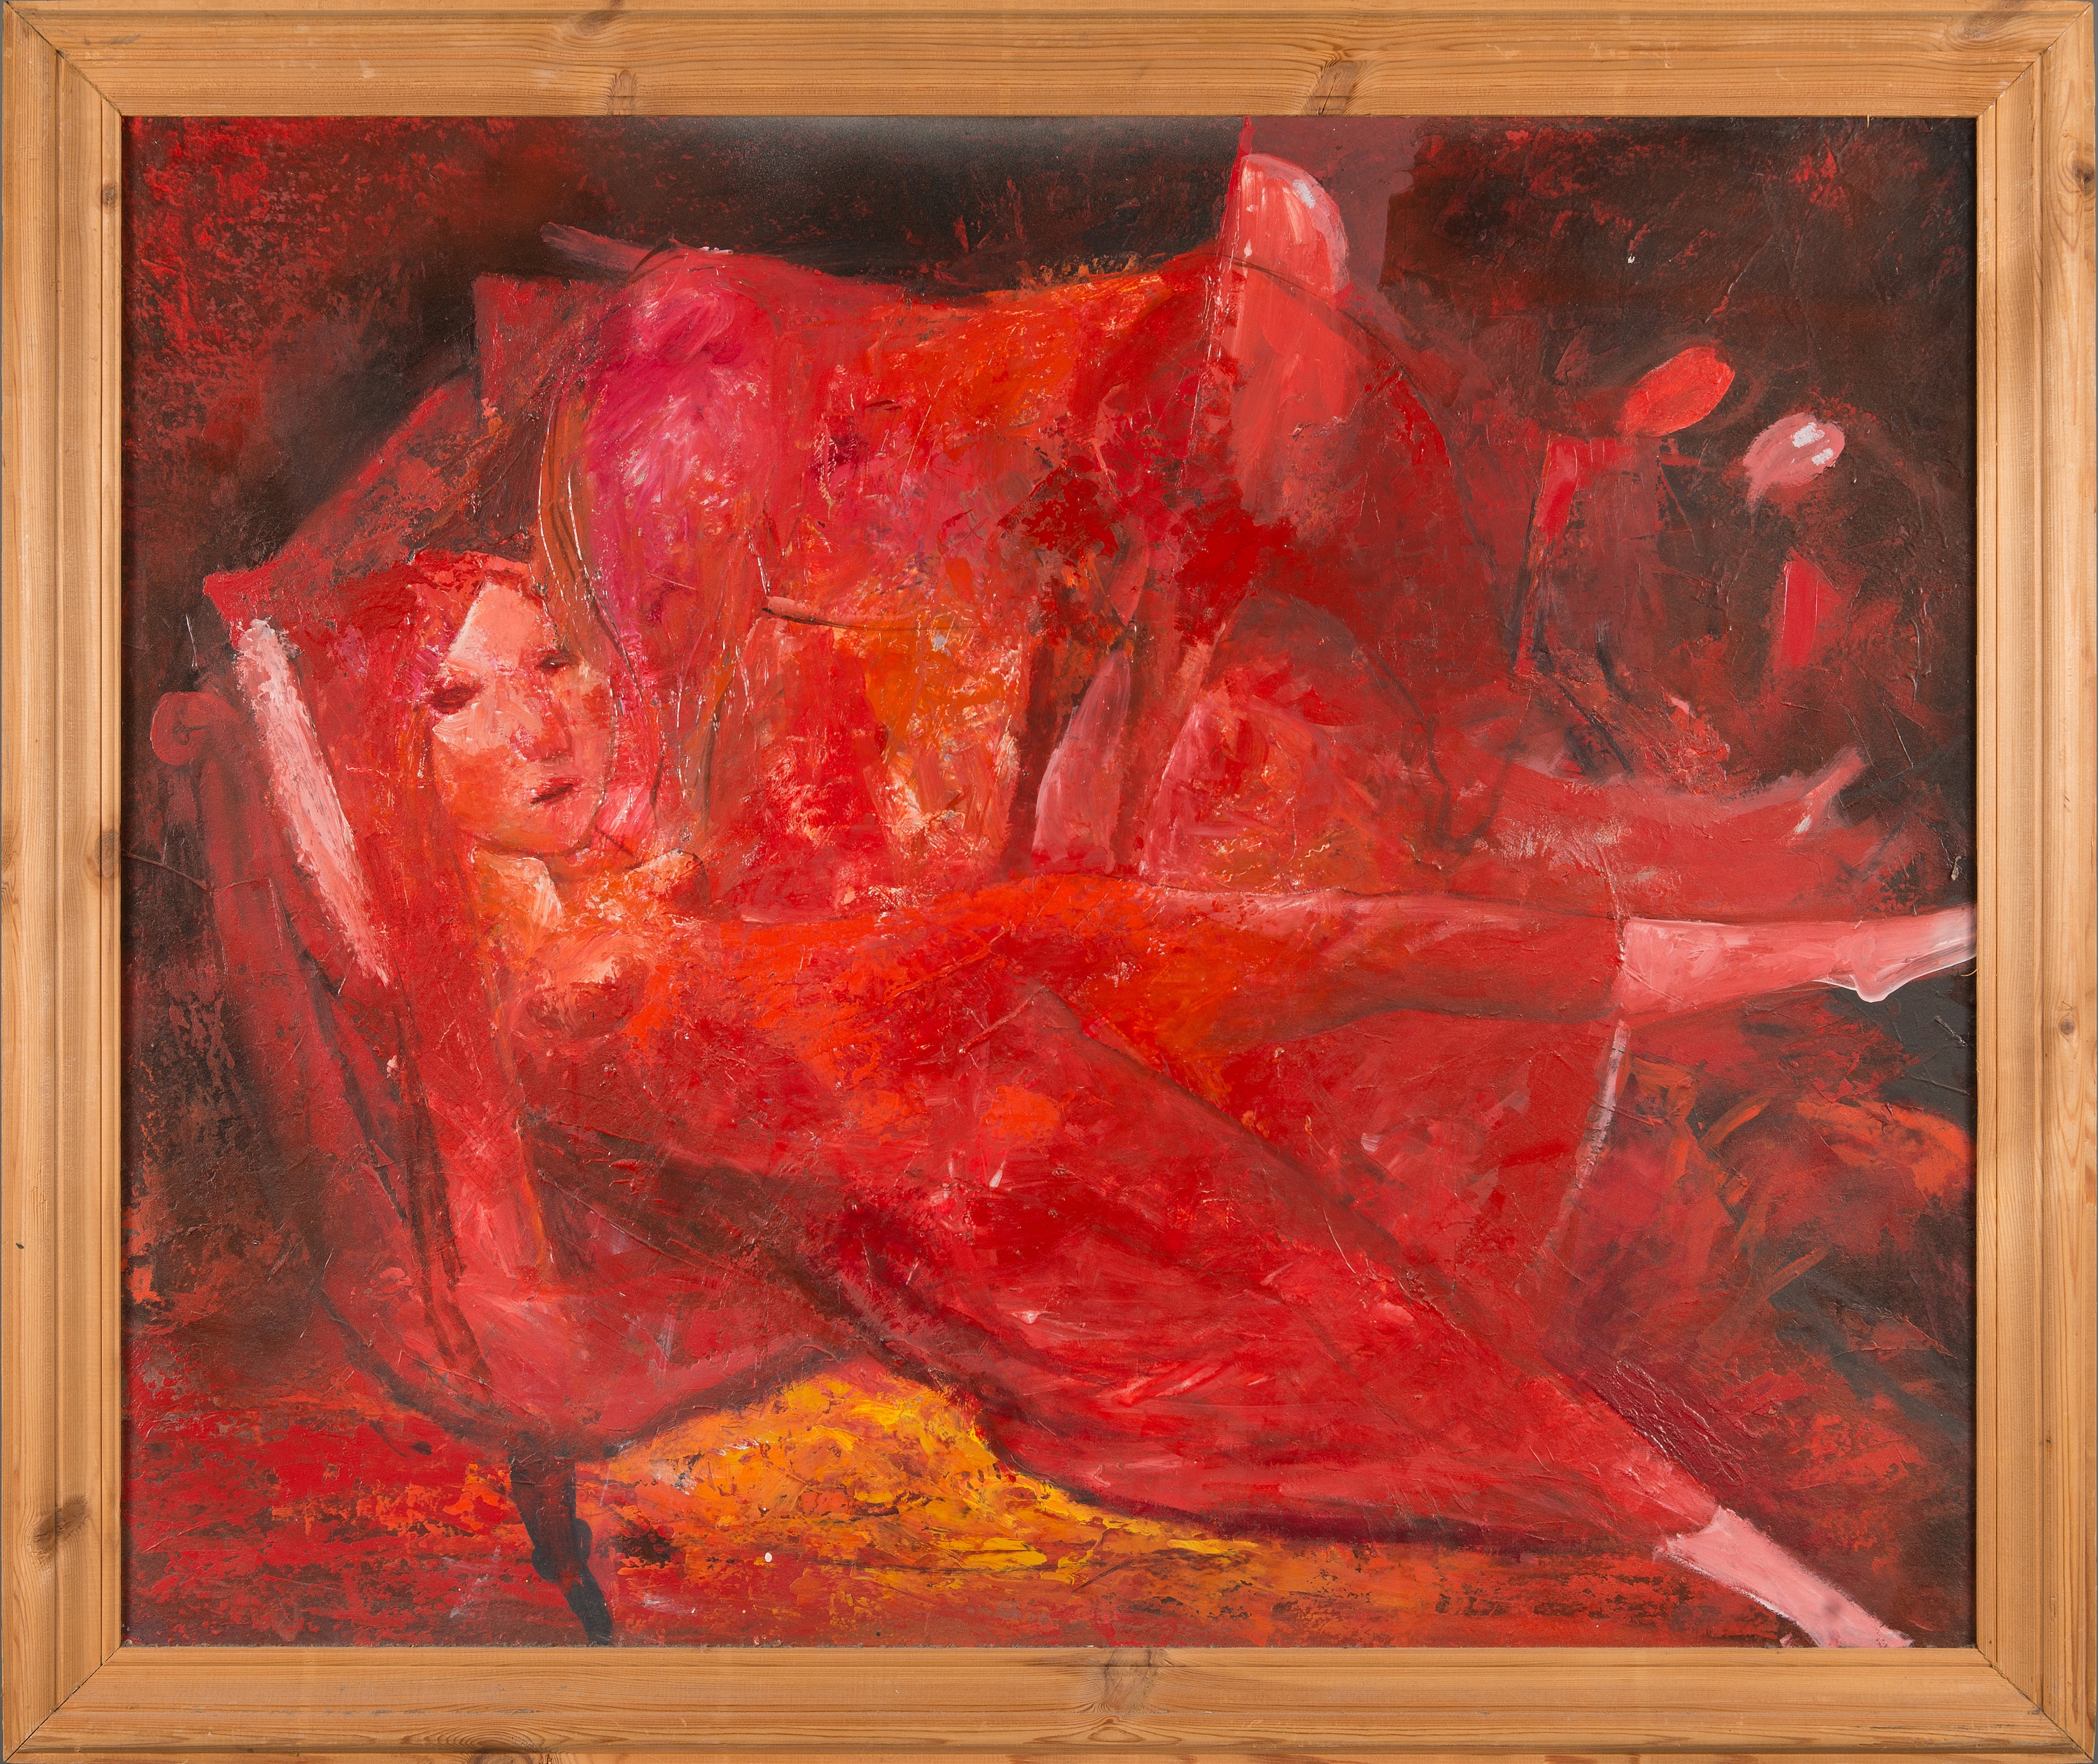 'Õhtu' (Evening), 84 x 102 cm by Edgar Valter